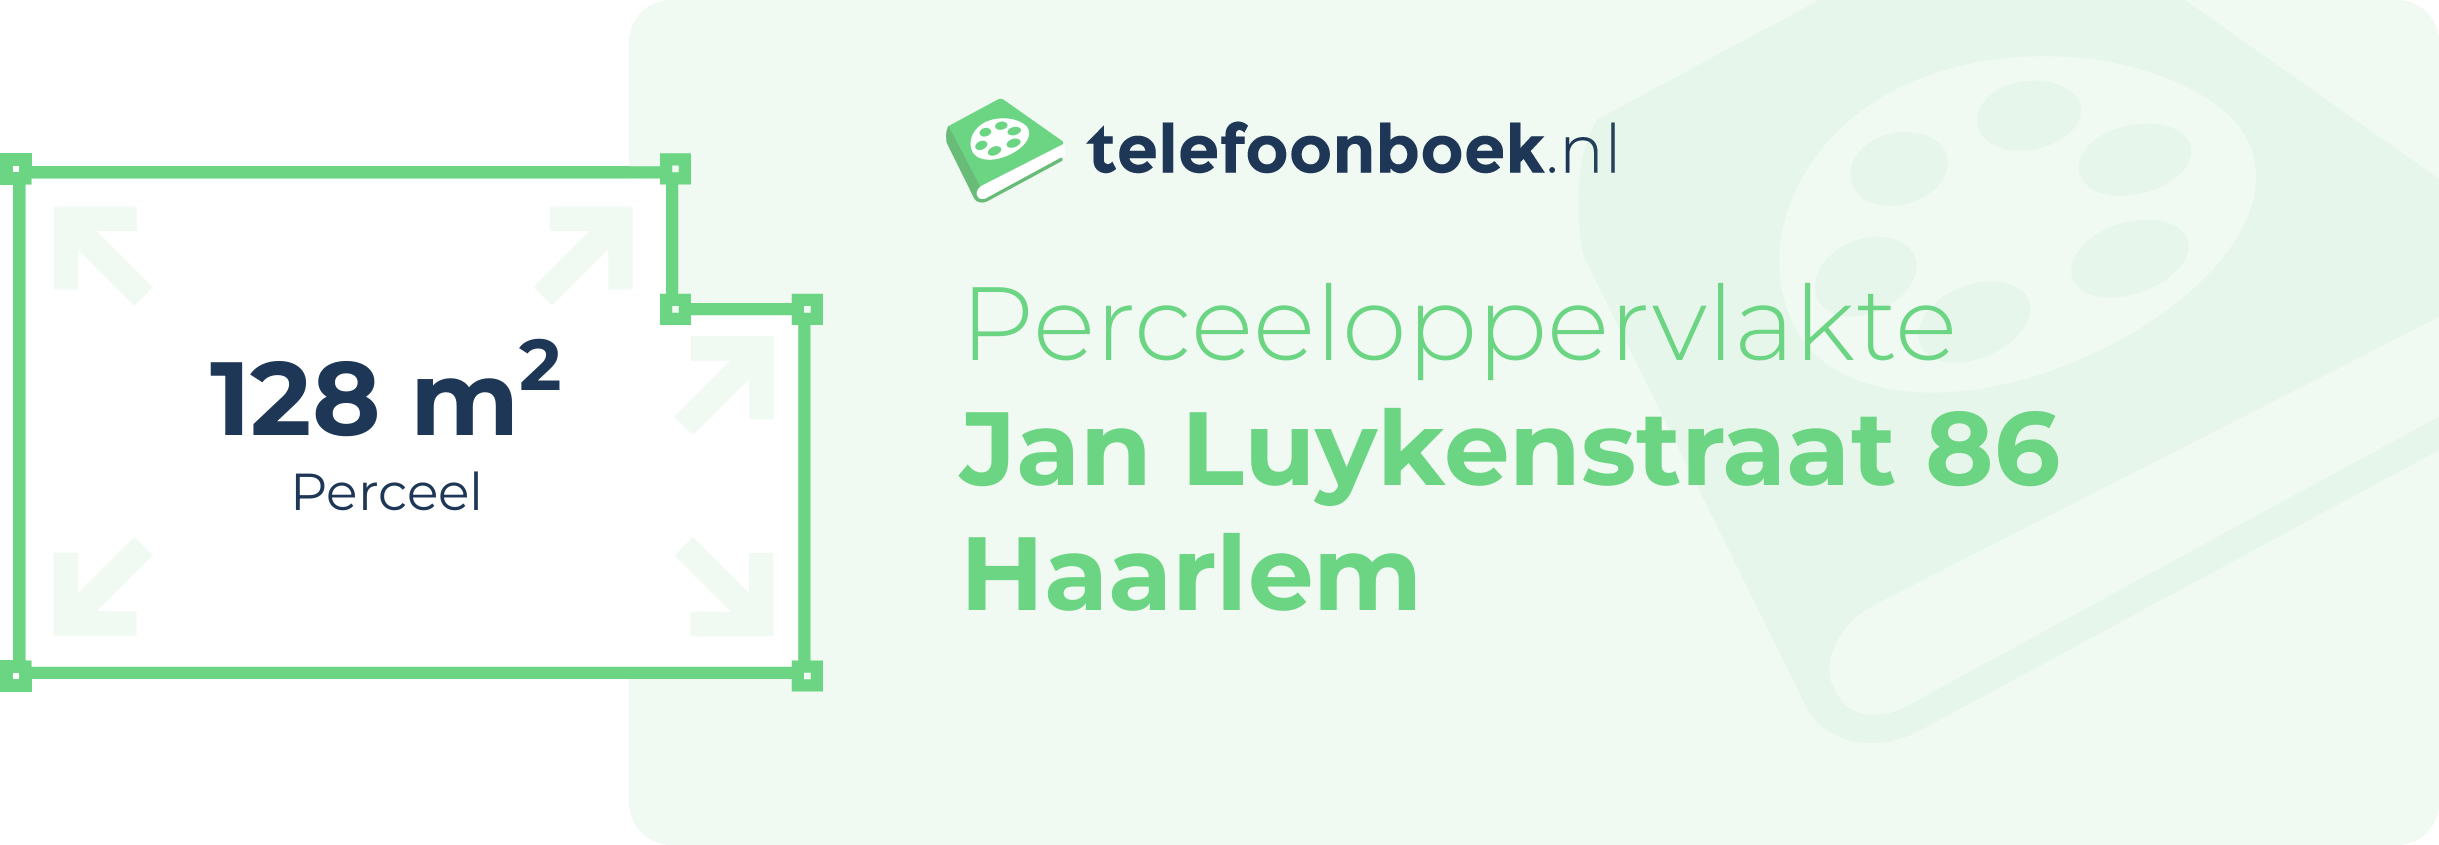 Perceeloppervlakte Jan Luykenstraat 86 Haarlem